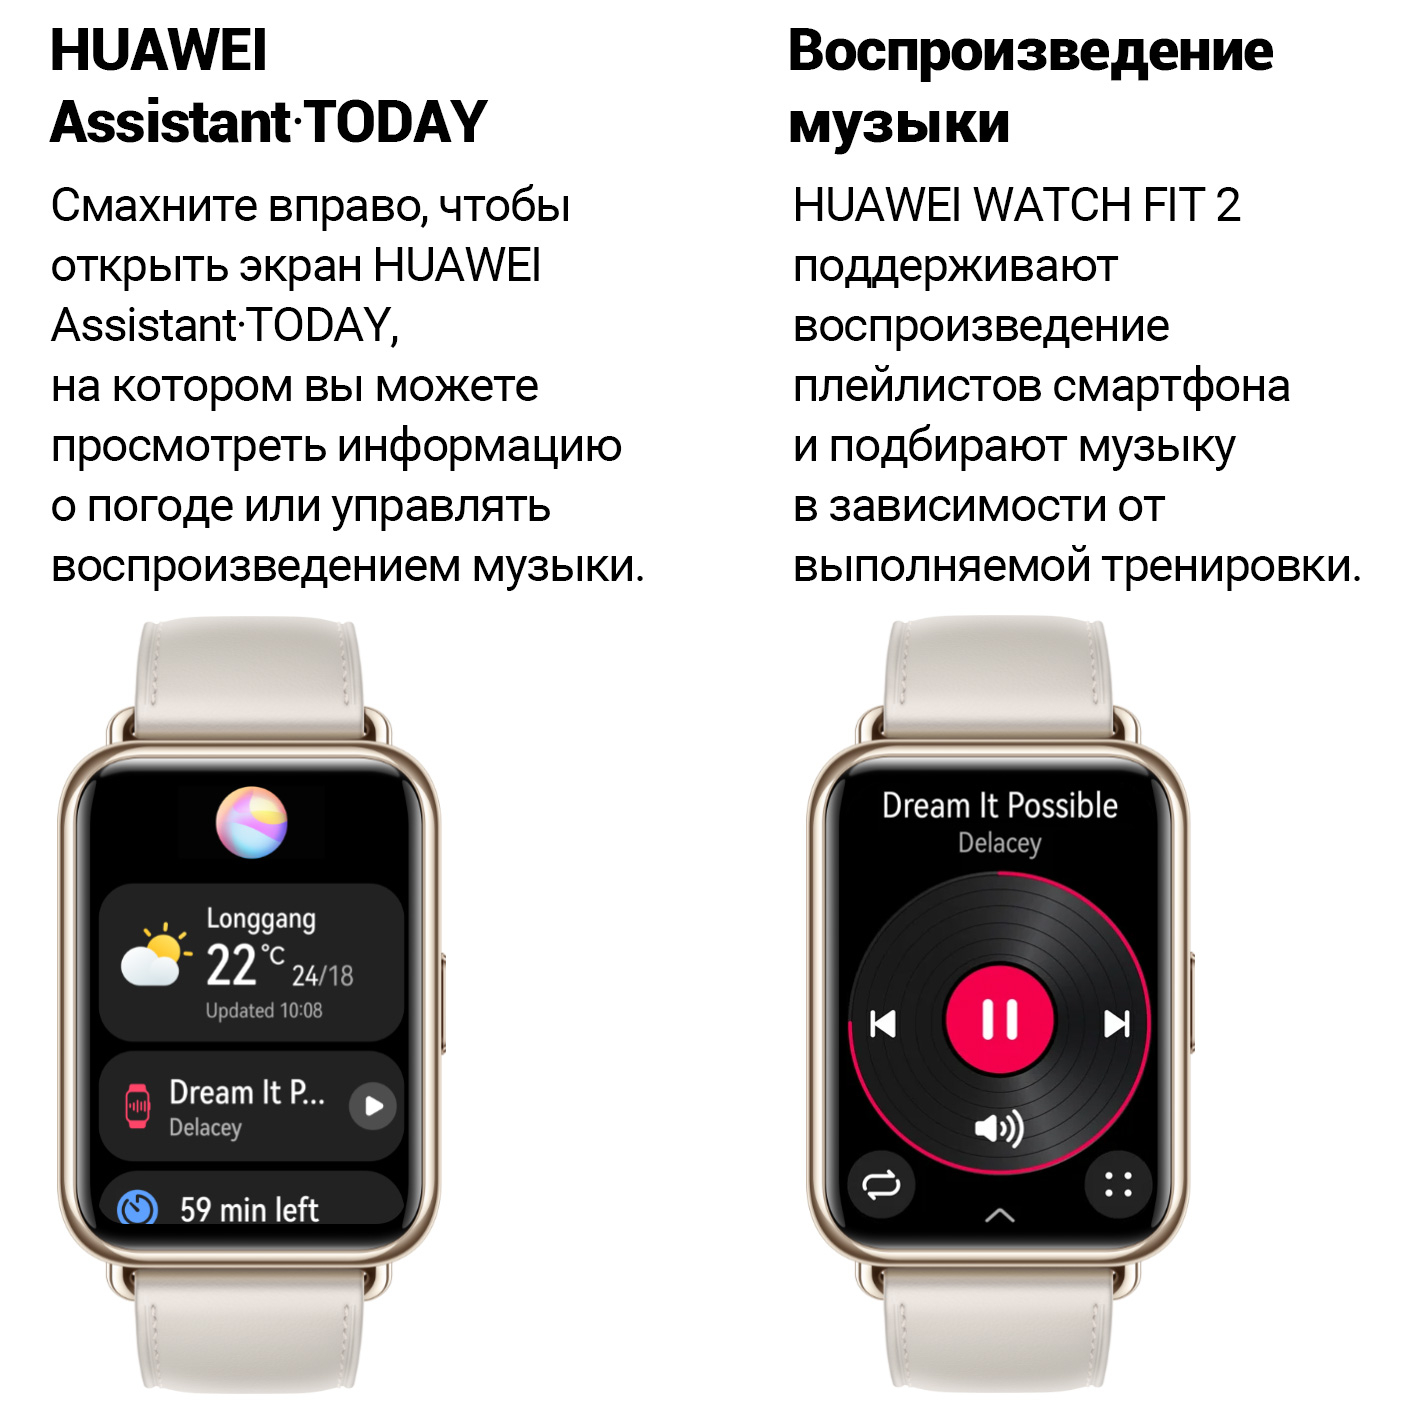 Как привязать часы huawei. Смарт часы Хуавей фит 2. Часы Huawei watch Fit 2. Смарт часы Хуавей вотч фит. Смарт-часы Huawei Fit 2 Classic Edition.